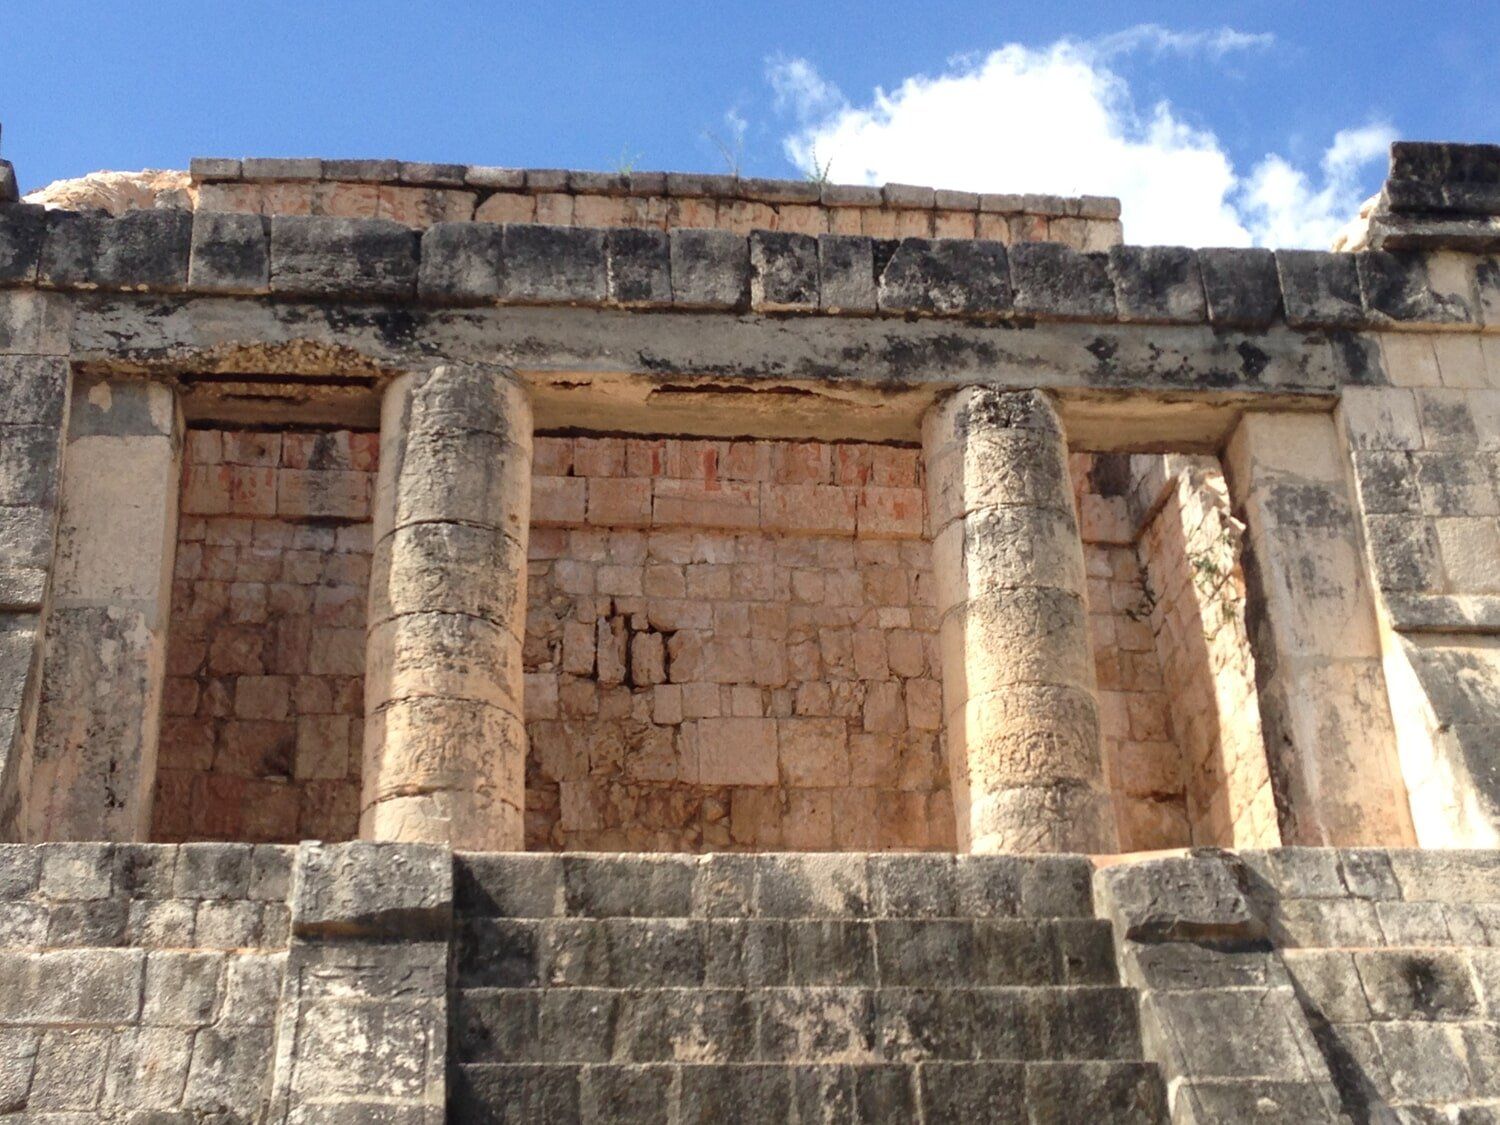 Built By The Mayans... Not E. A. De Santis & Son